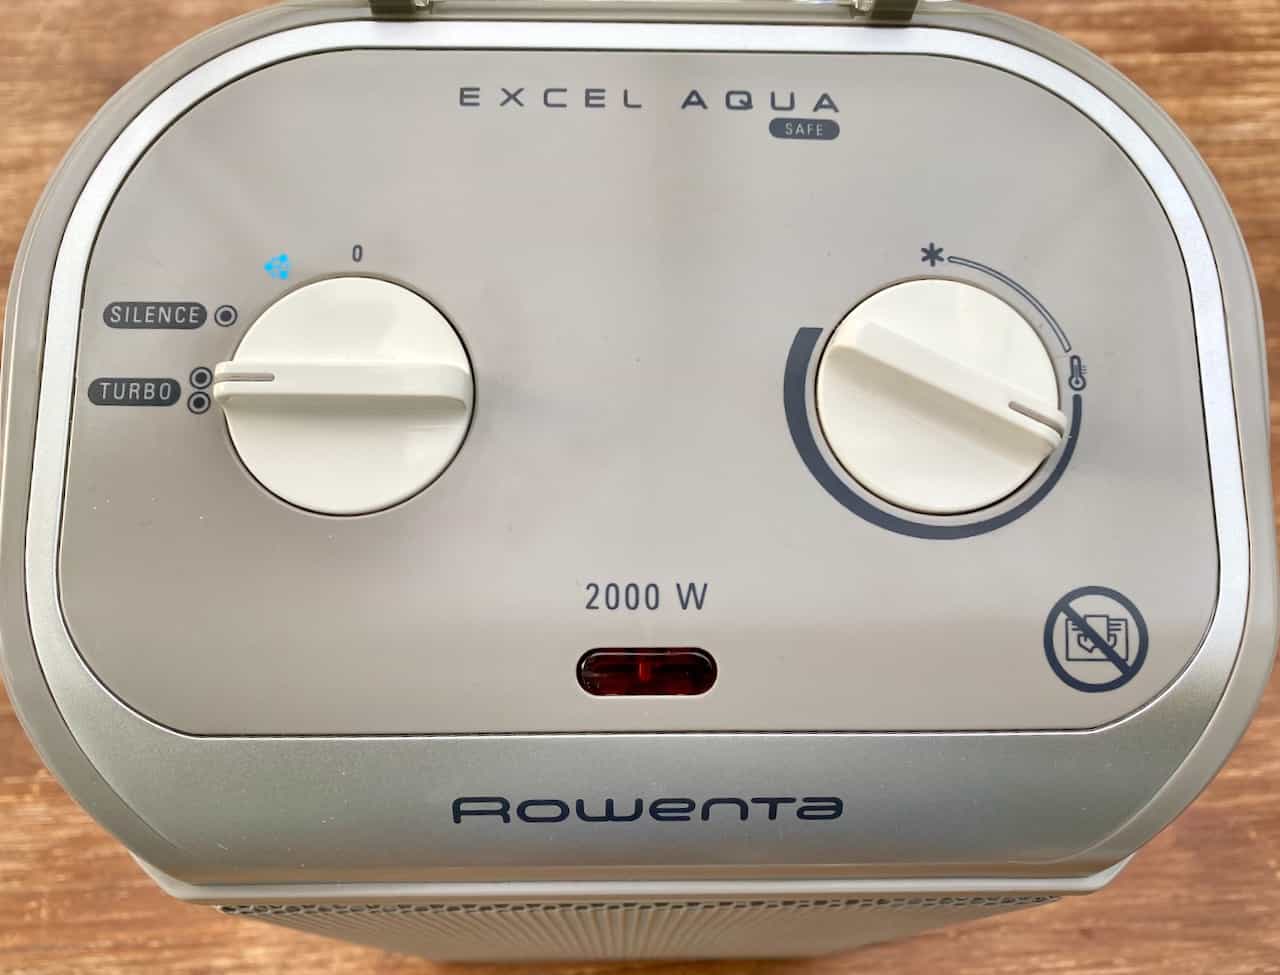 Rowenta-SO9280-Excel-Aqua-Safe-Keramik-Heizlüfter-Bedienelemente